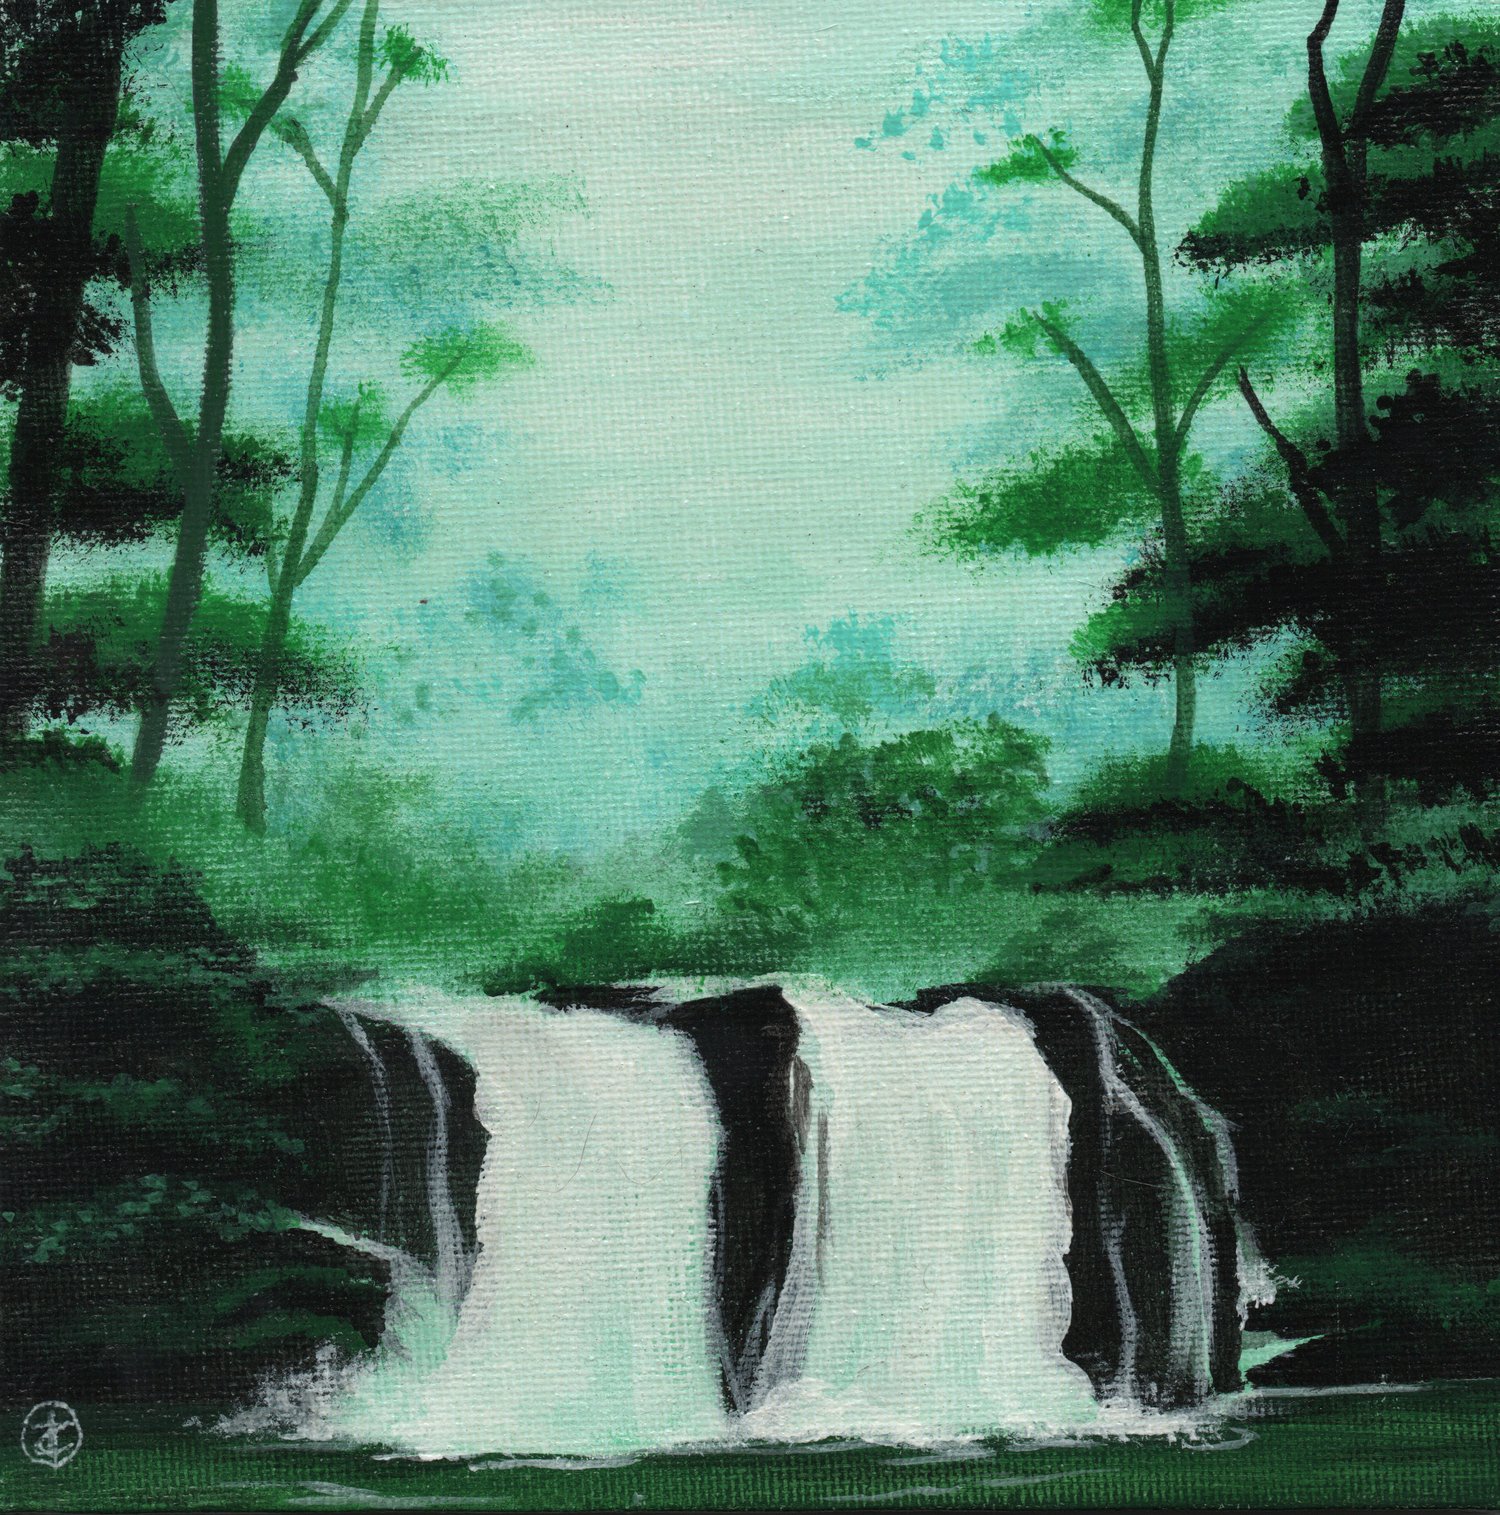 Landscape: Waterfall